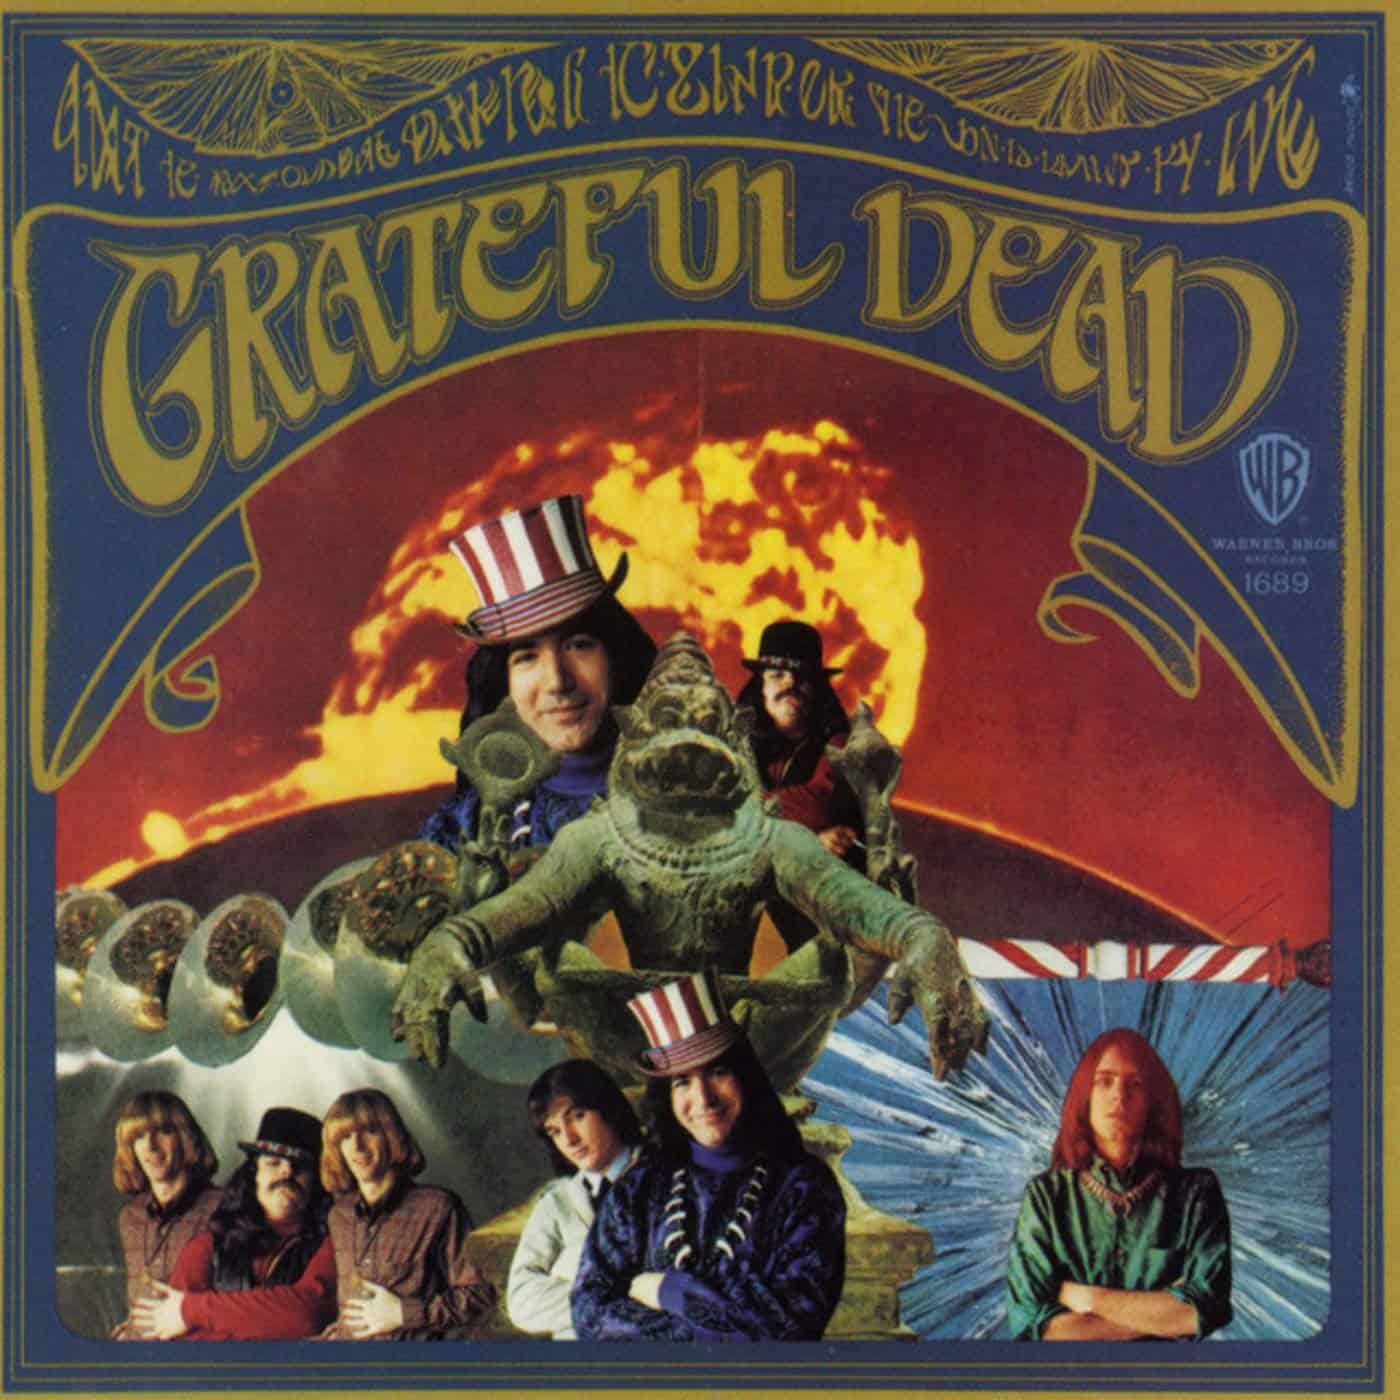 The Grateful Dead album